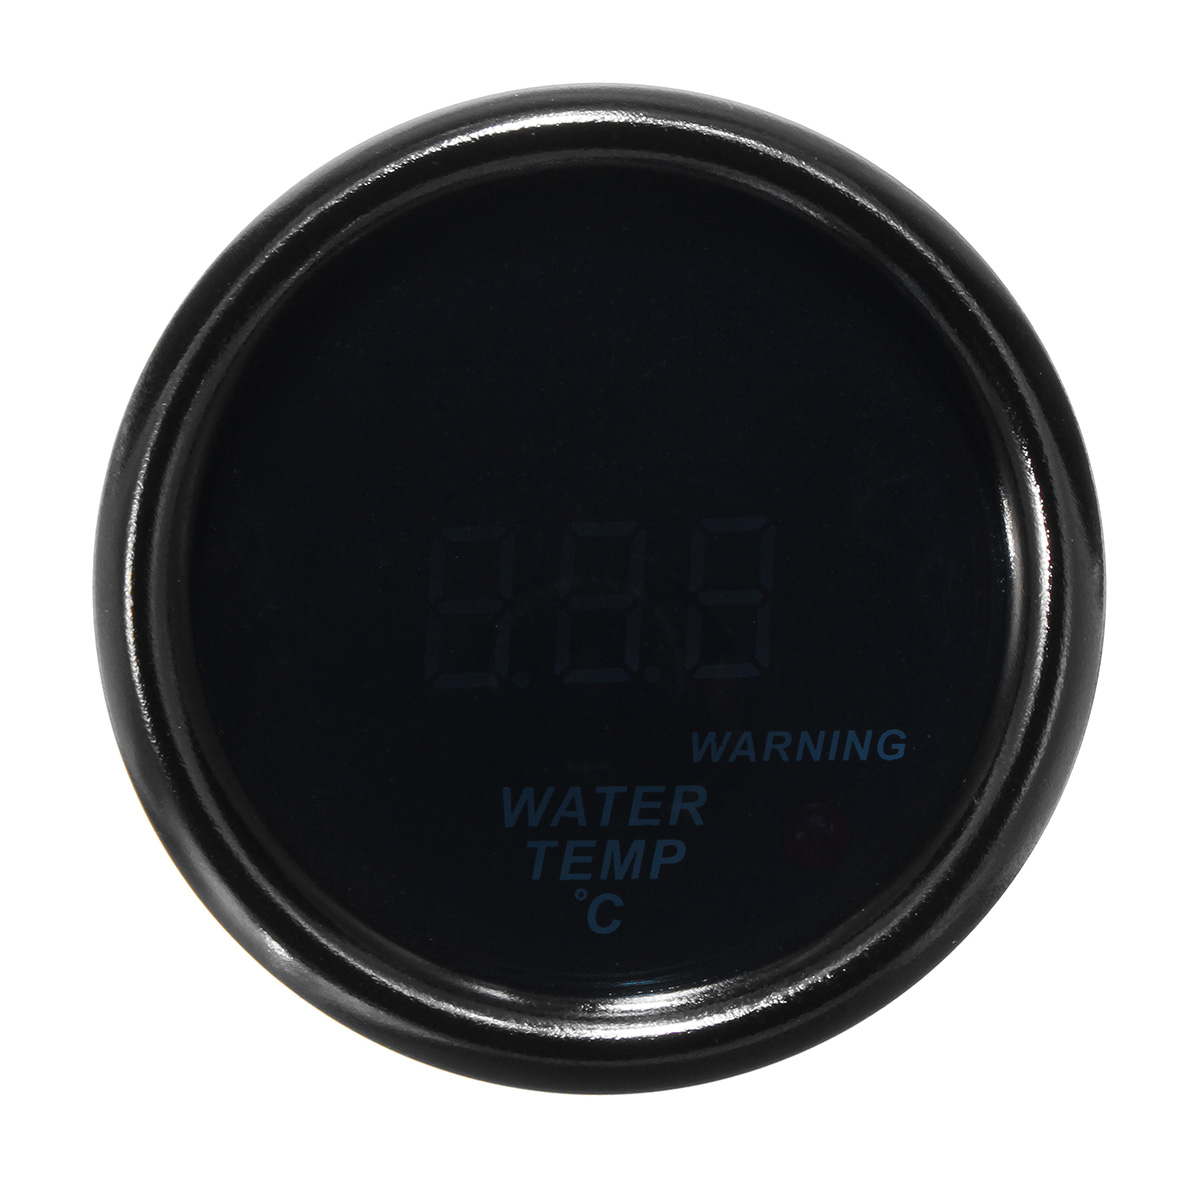 2'' 52Mm 20-150℃ Water Temperature Gauge Digital LED Display Black Face Sensor